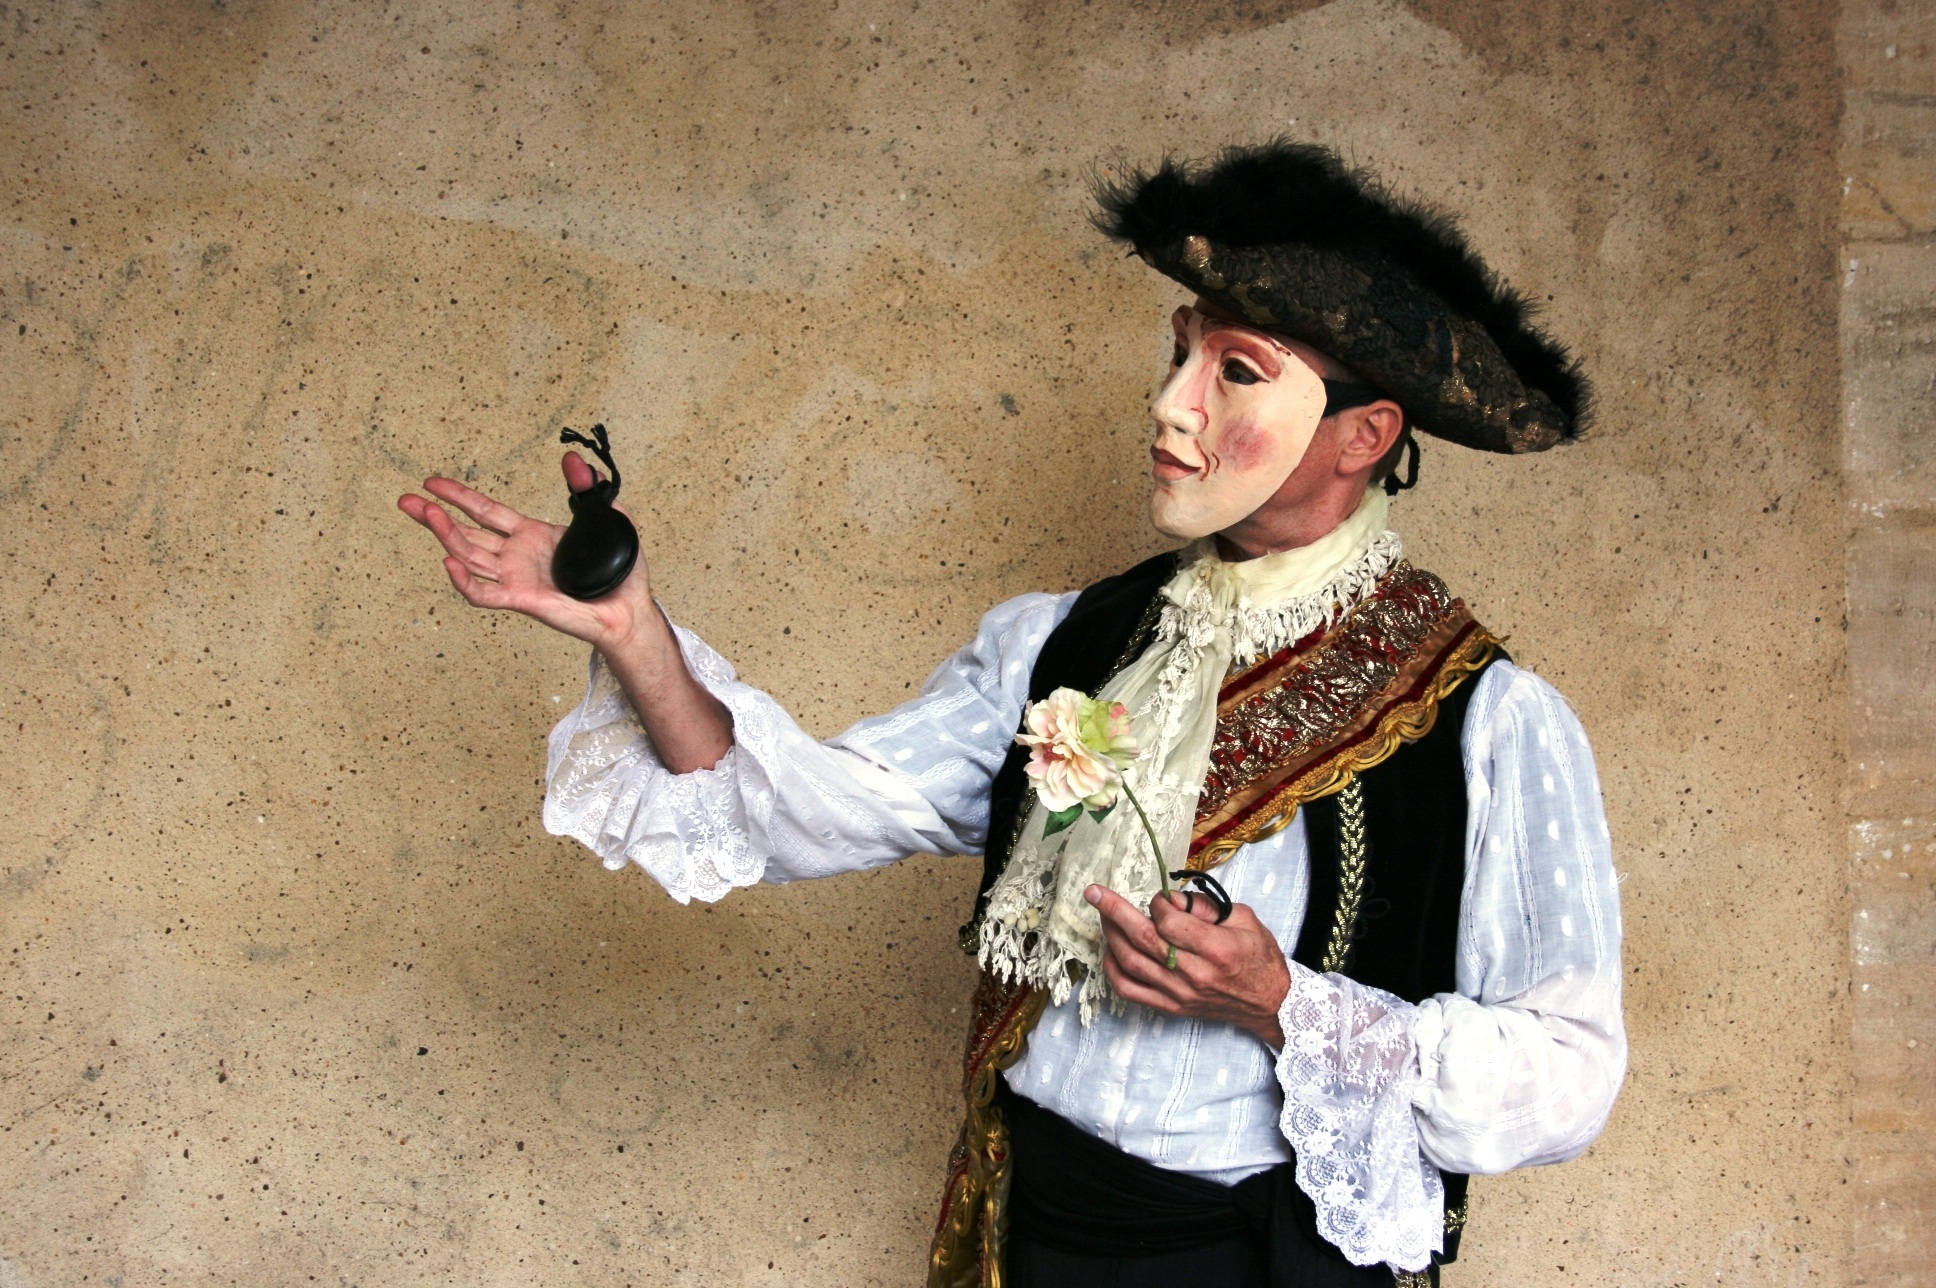 La imagen muestra a una persona dsifrazada con una careta sujetando en una mano una flor y en la otra una castañuela.